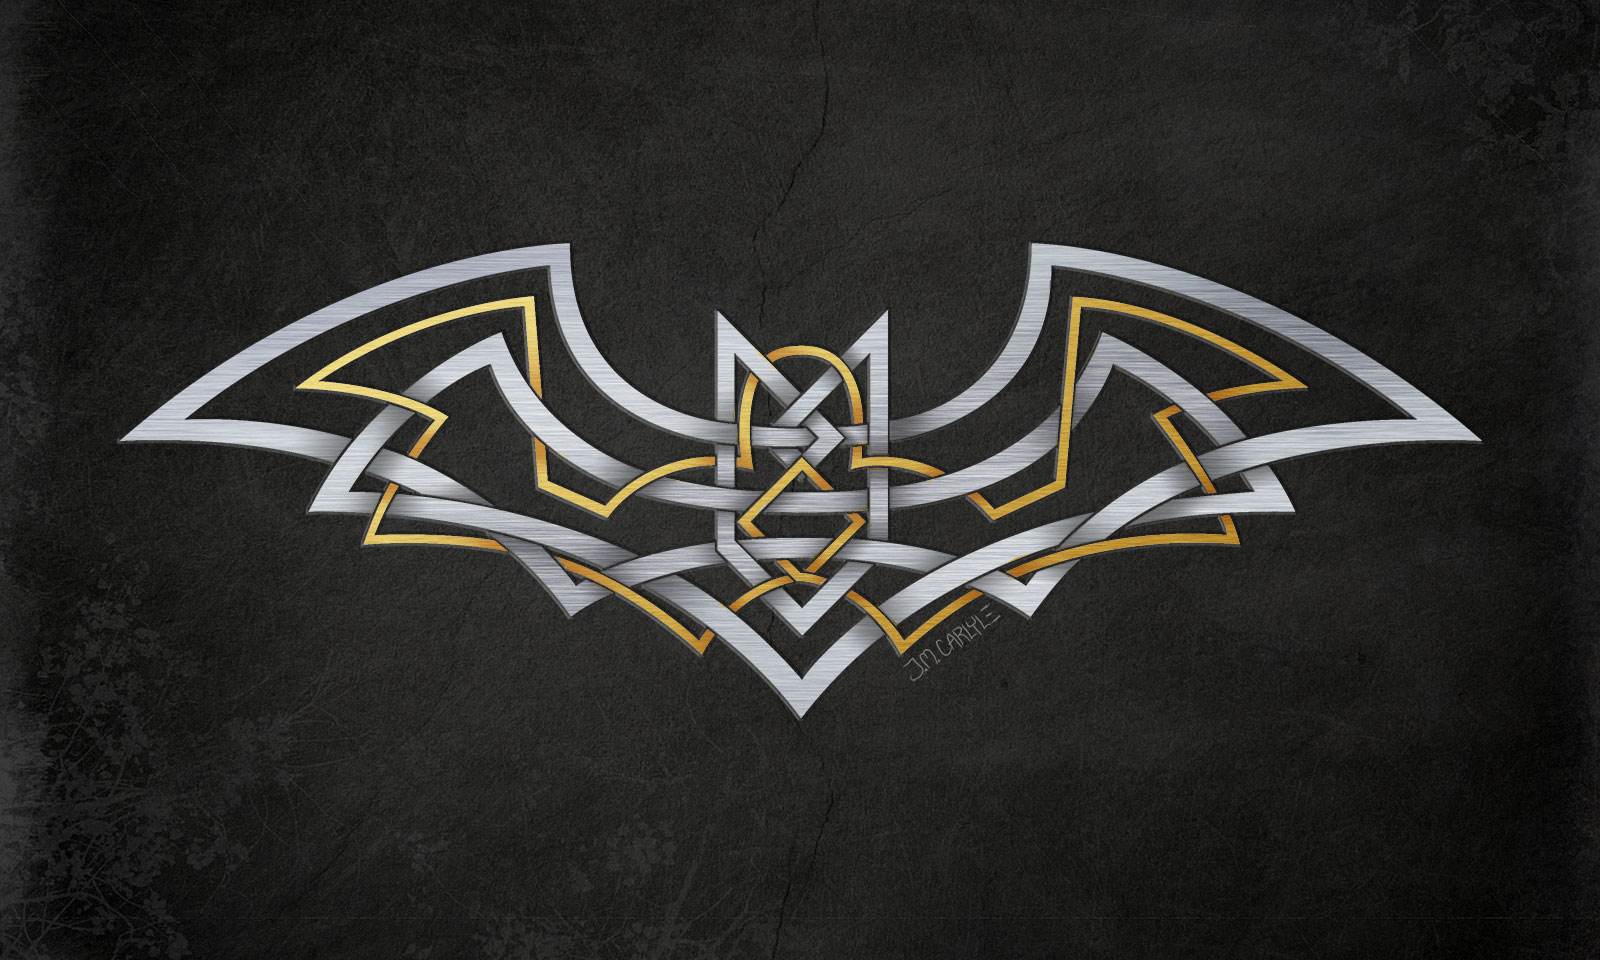 Batman logo tattoo idea | TattoosAI